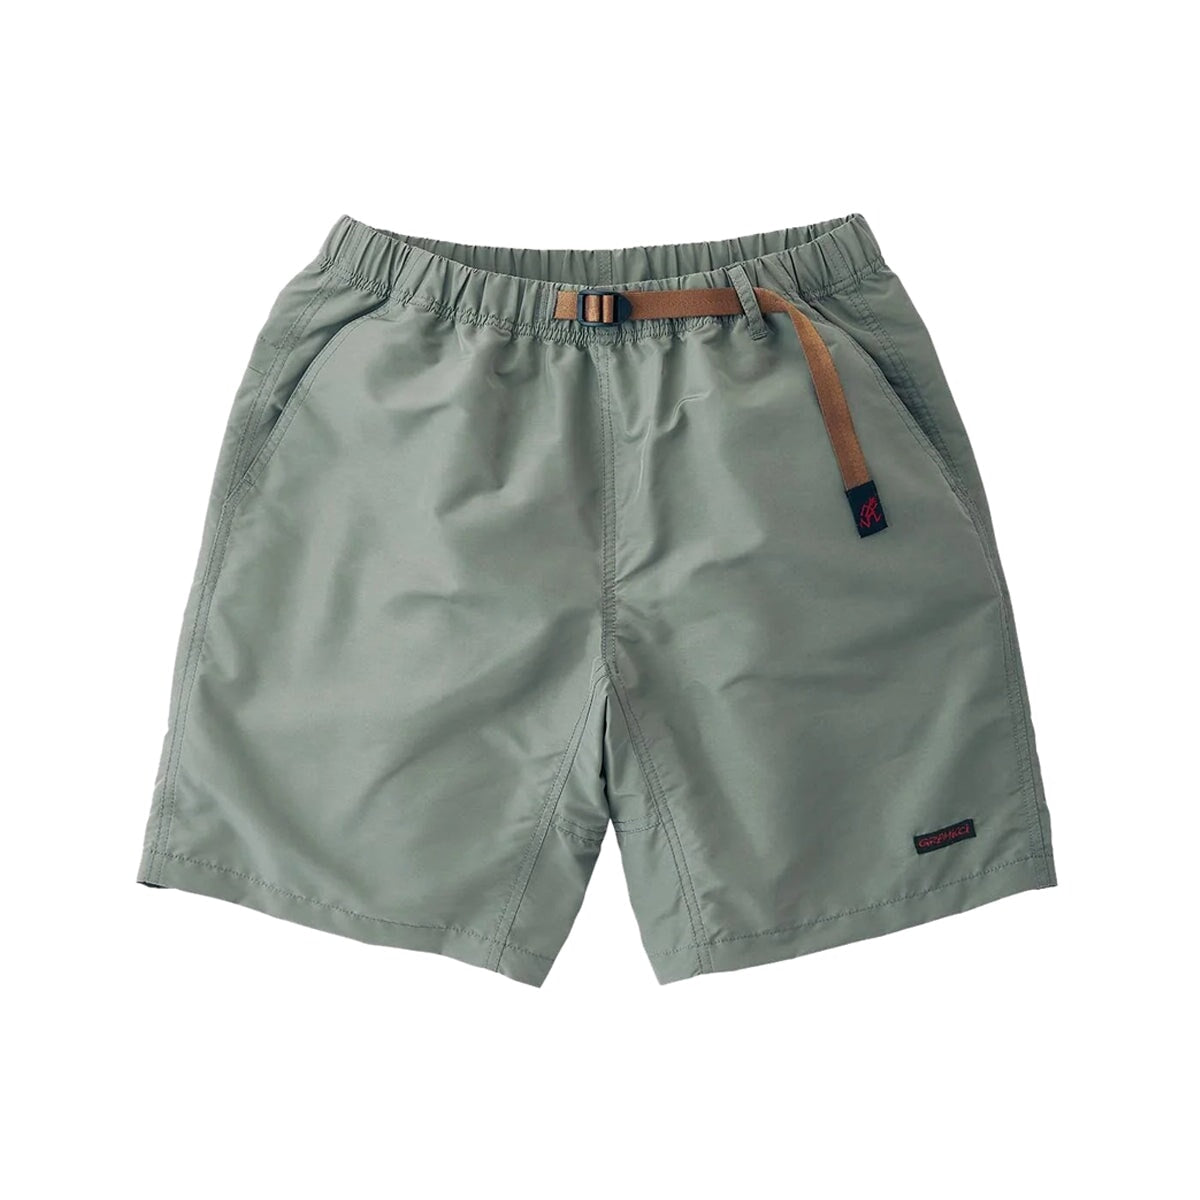 Gramicci Shell Packable Shorts - Seal Grey Shorts Gramicci 